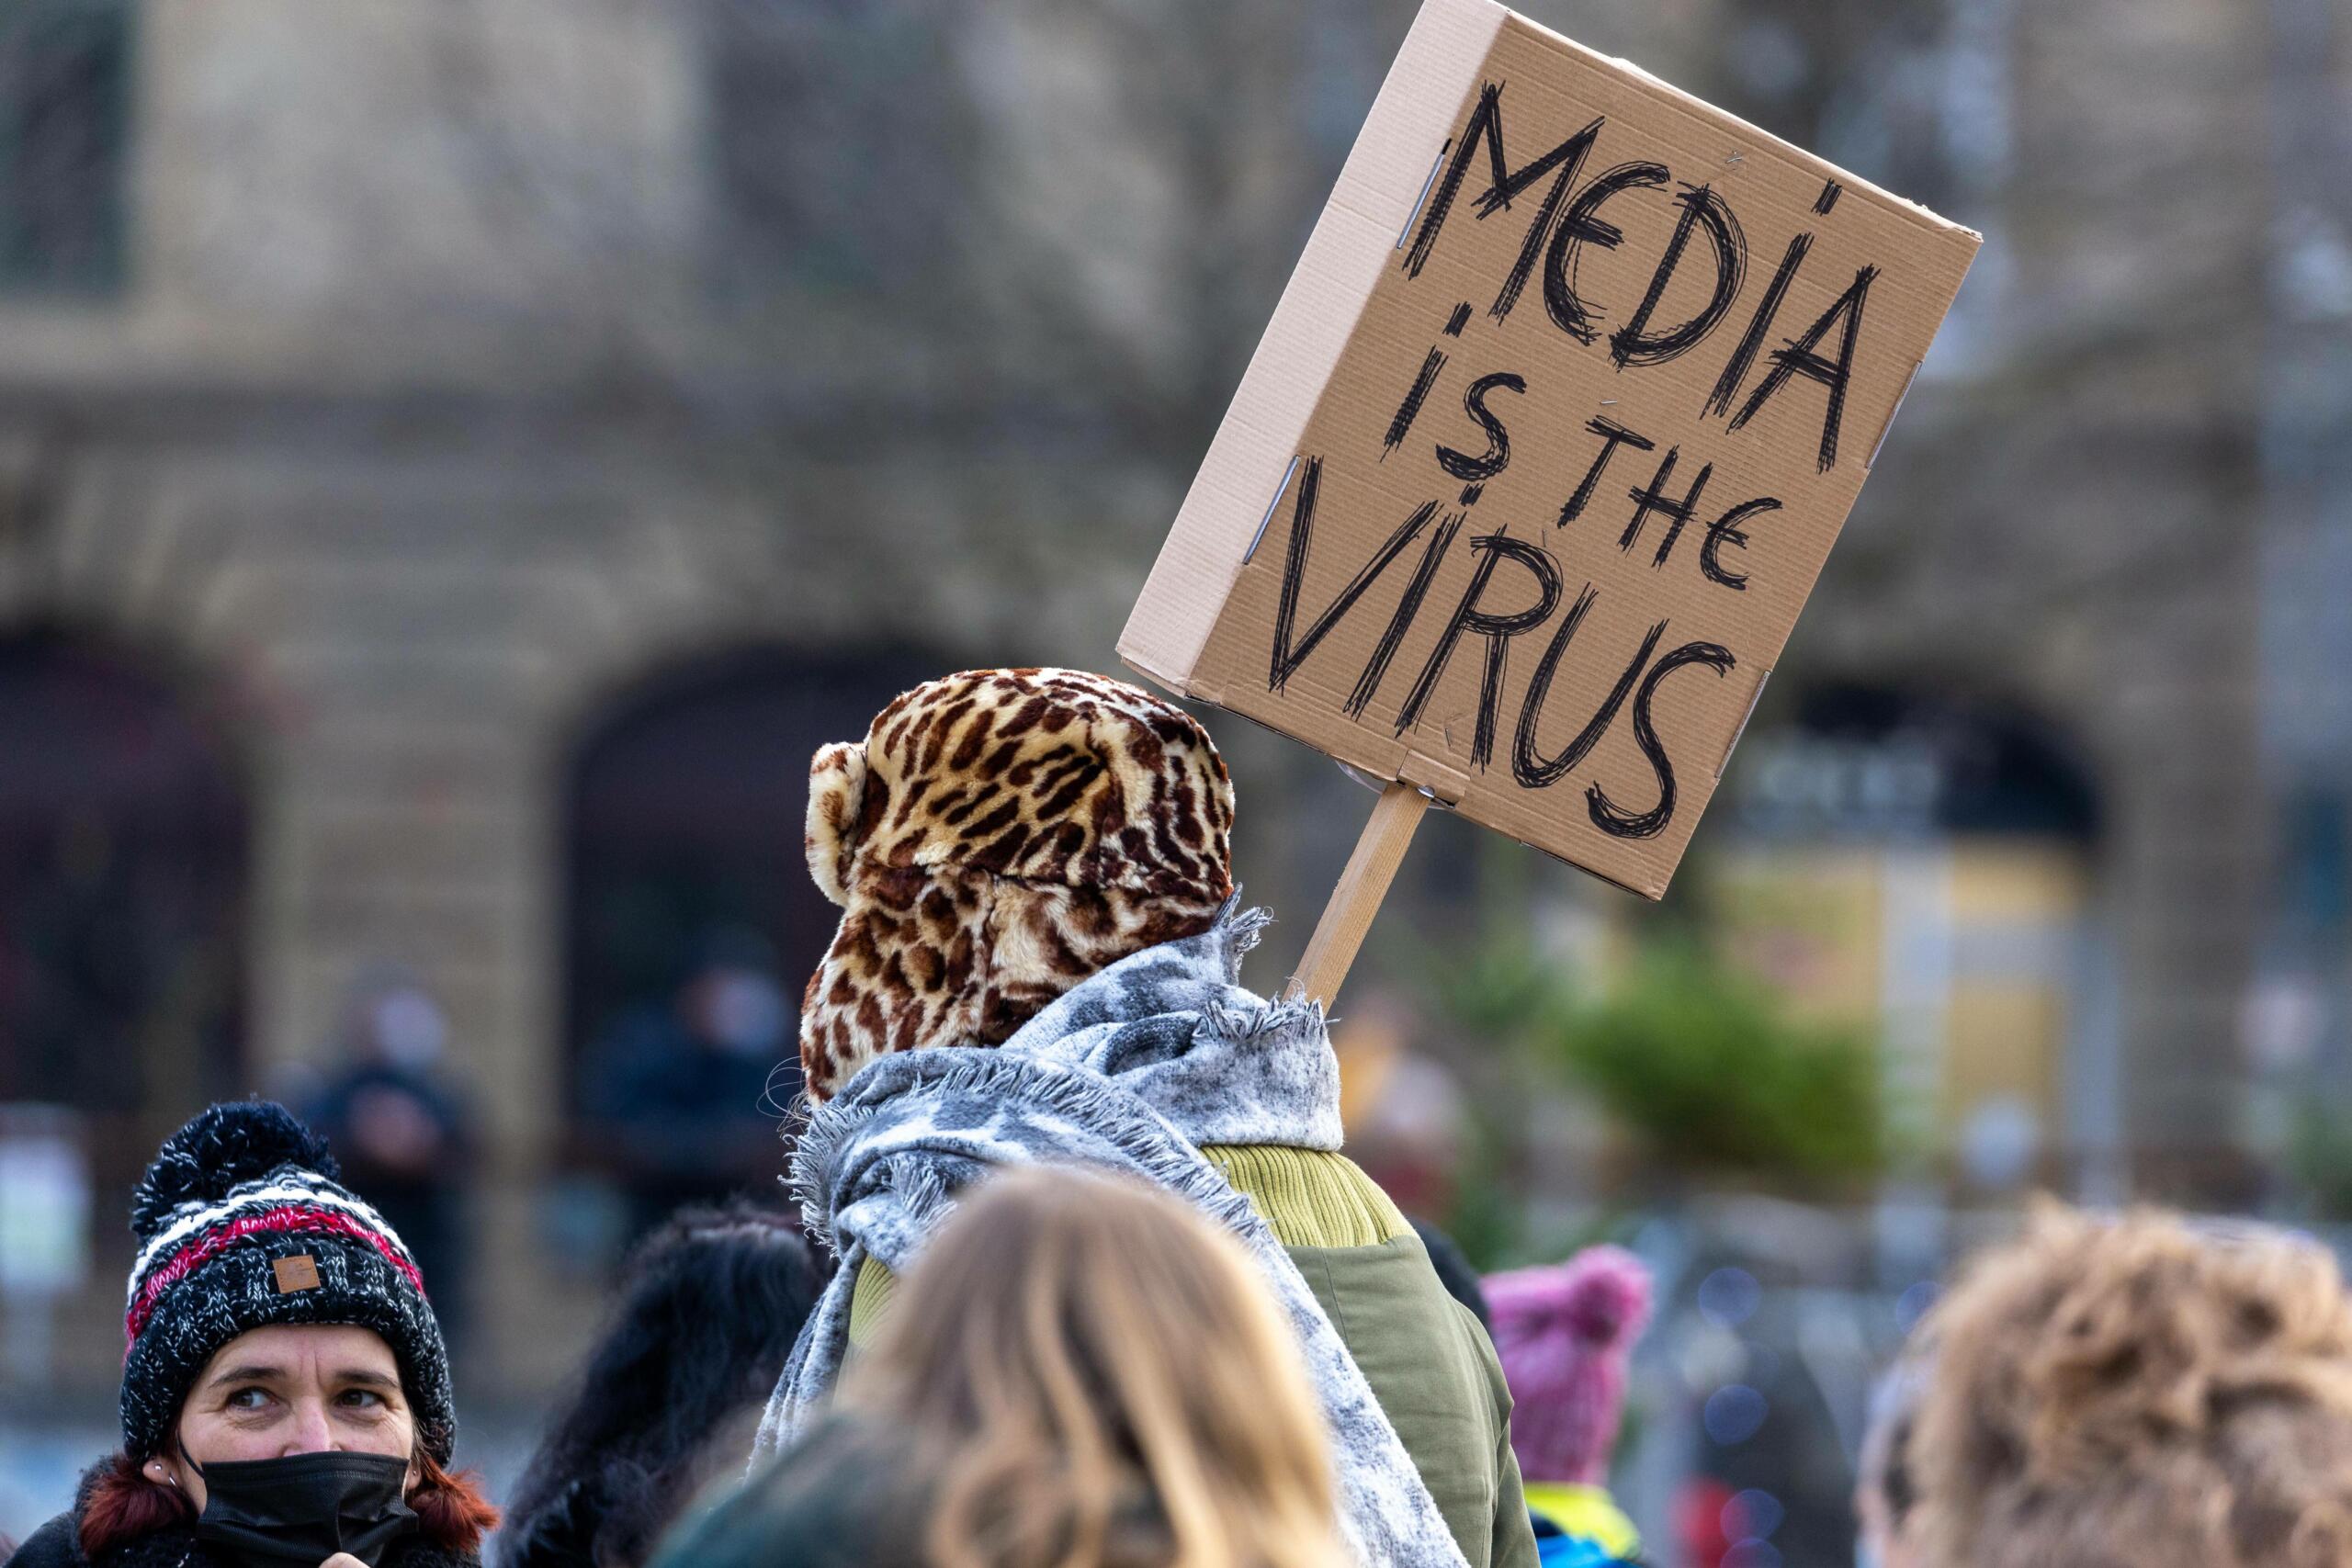 Eine Person auf einer Demo mit einem Schild: "Media is the Virus"